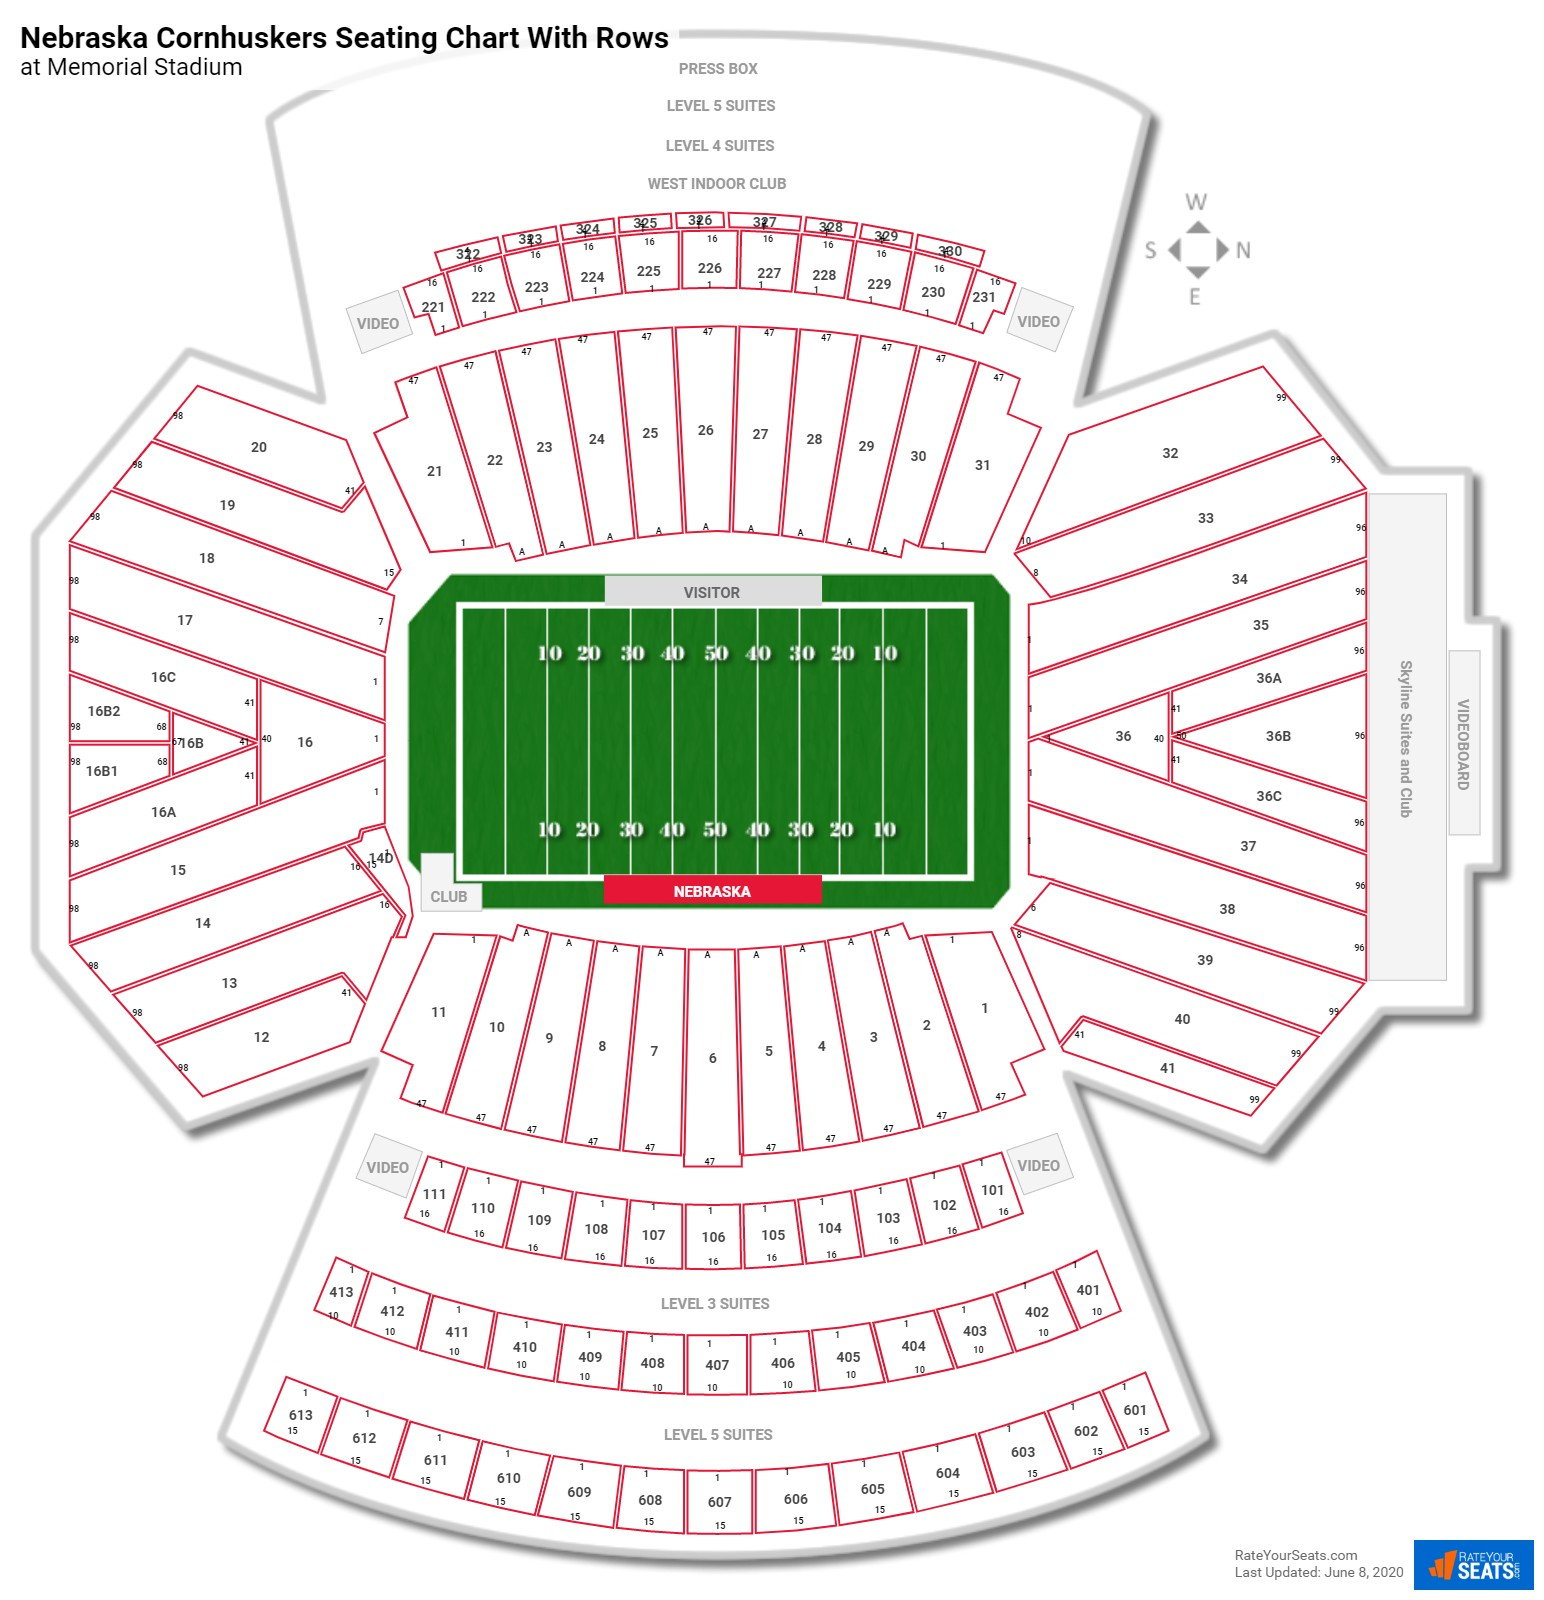 Memorial Stadium (Nebraska) seating chart with row numbers